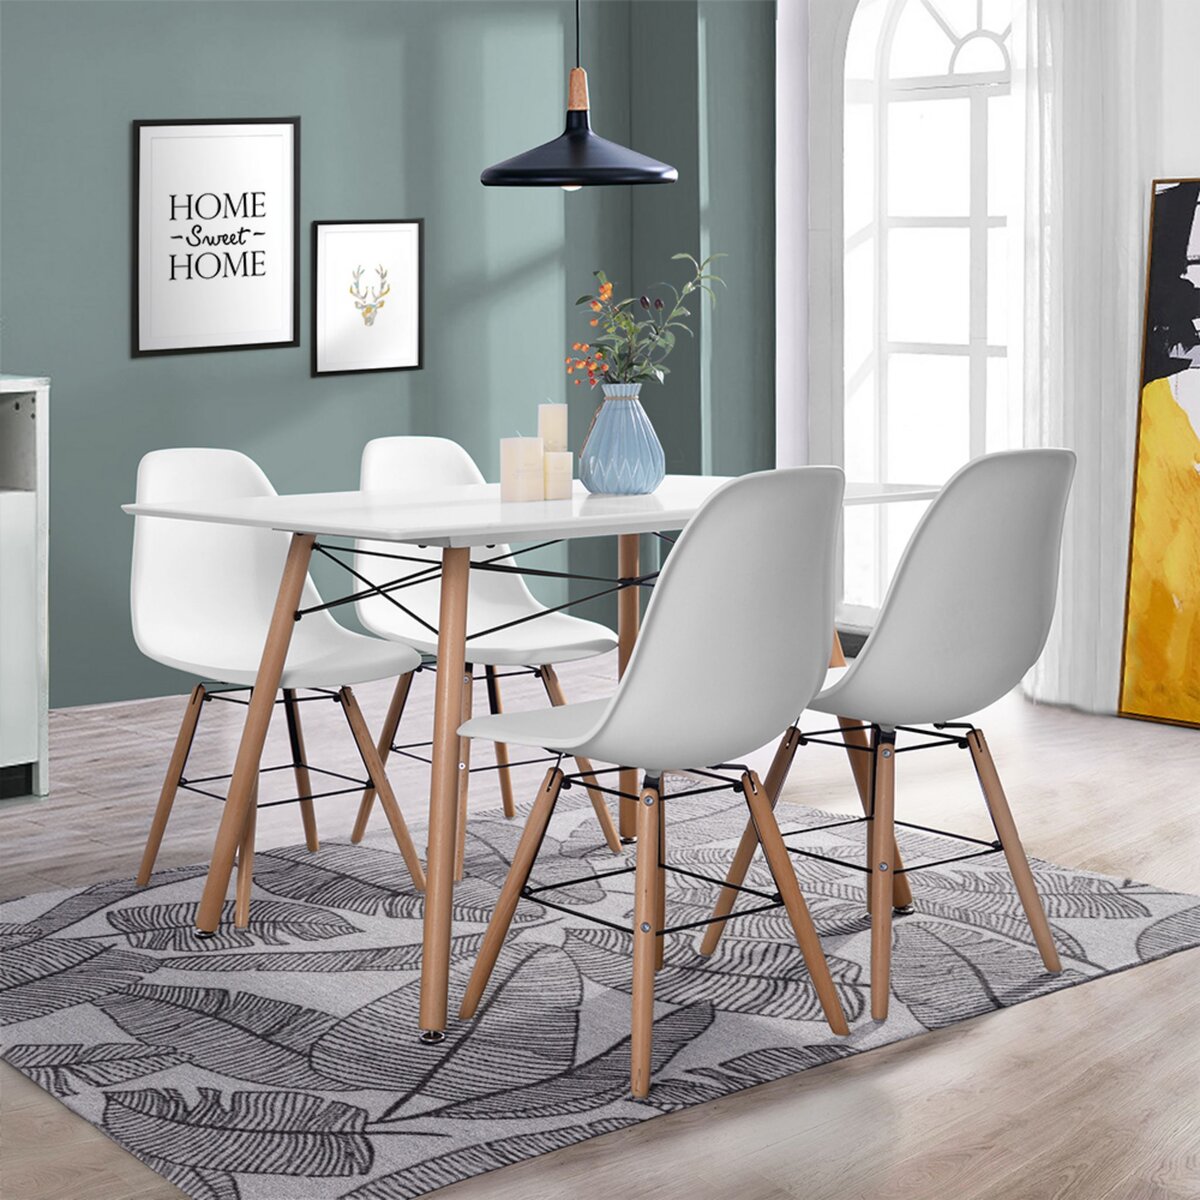 Chaise blanche et bois scandinave Pas cher pour salle à manger